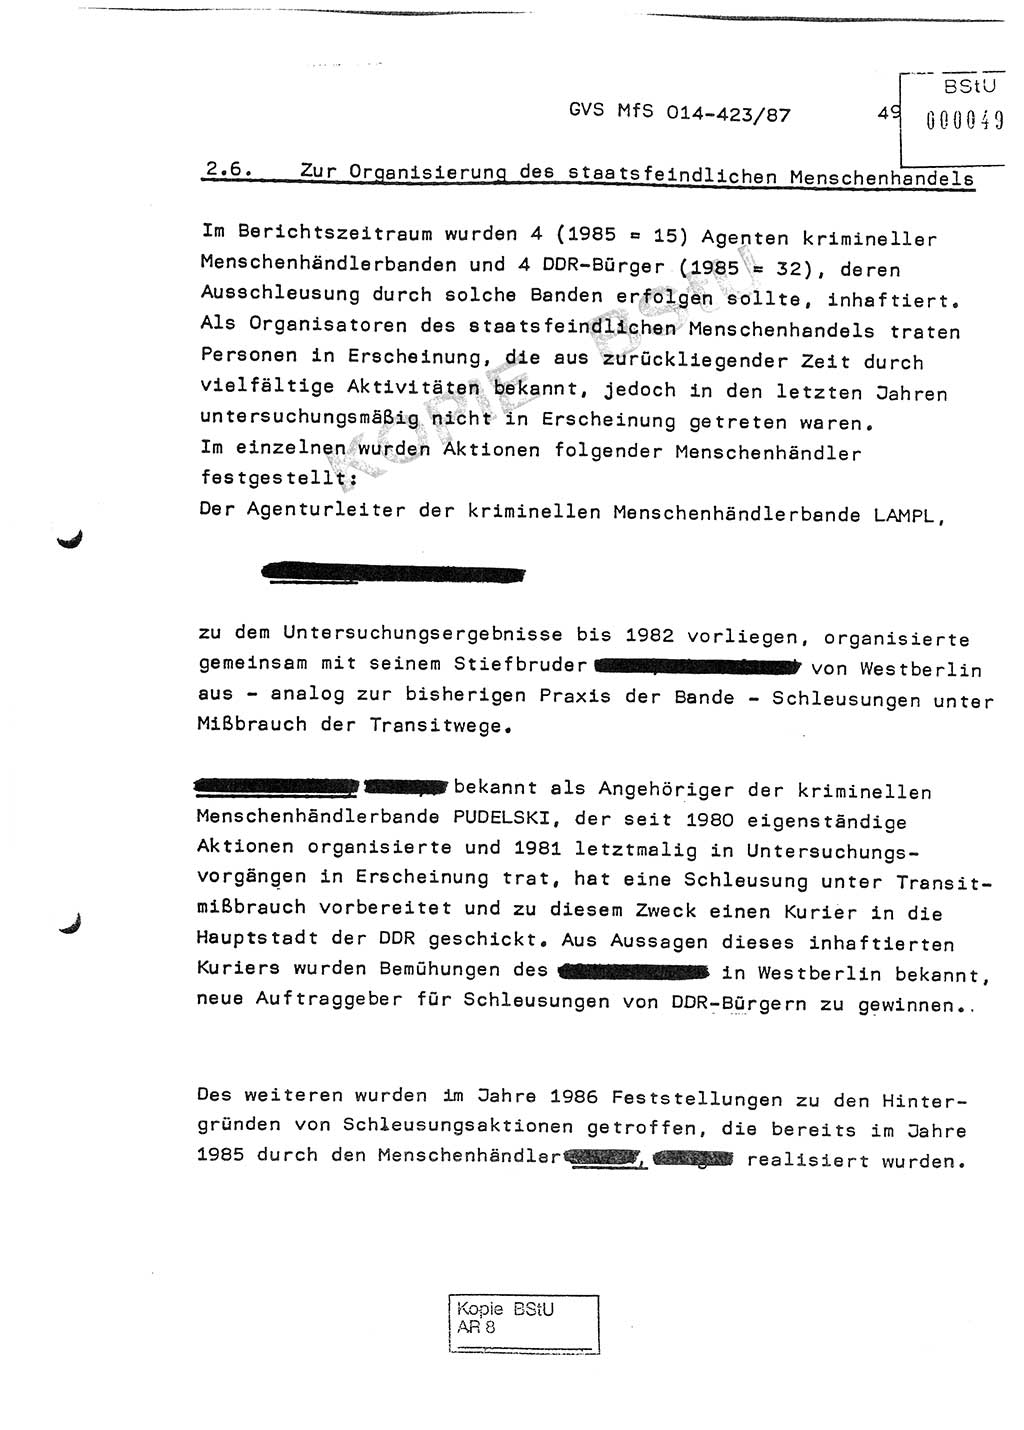 Jahresbericht der Hauptabteilung (HA) Ⅸ 1986, Einschätzung der Wirksamkeit der Untersuchungsarbeit im Jahre 1986, Ministerium für Staatssicherheit (MfS) der Deutschen Demokratischen Republik (DDR), Hauptabteilung Ⅸ, Geheime Verschlußsache (GVS) o014-423/87, Berlin 1987, Seite 49 (Einsch. MfS DDR HA Ⅸ GVS o014-423/87 1986, S. 49)